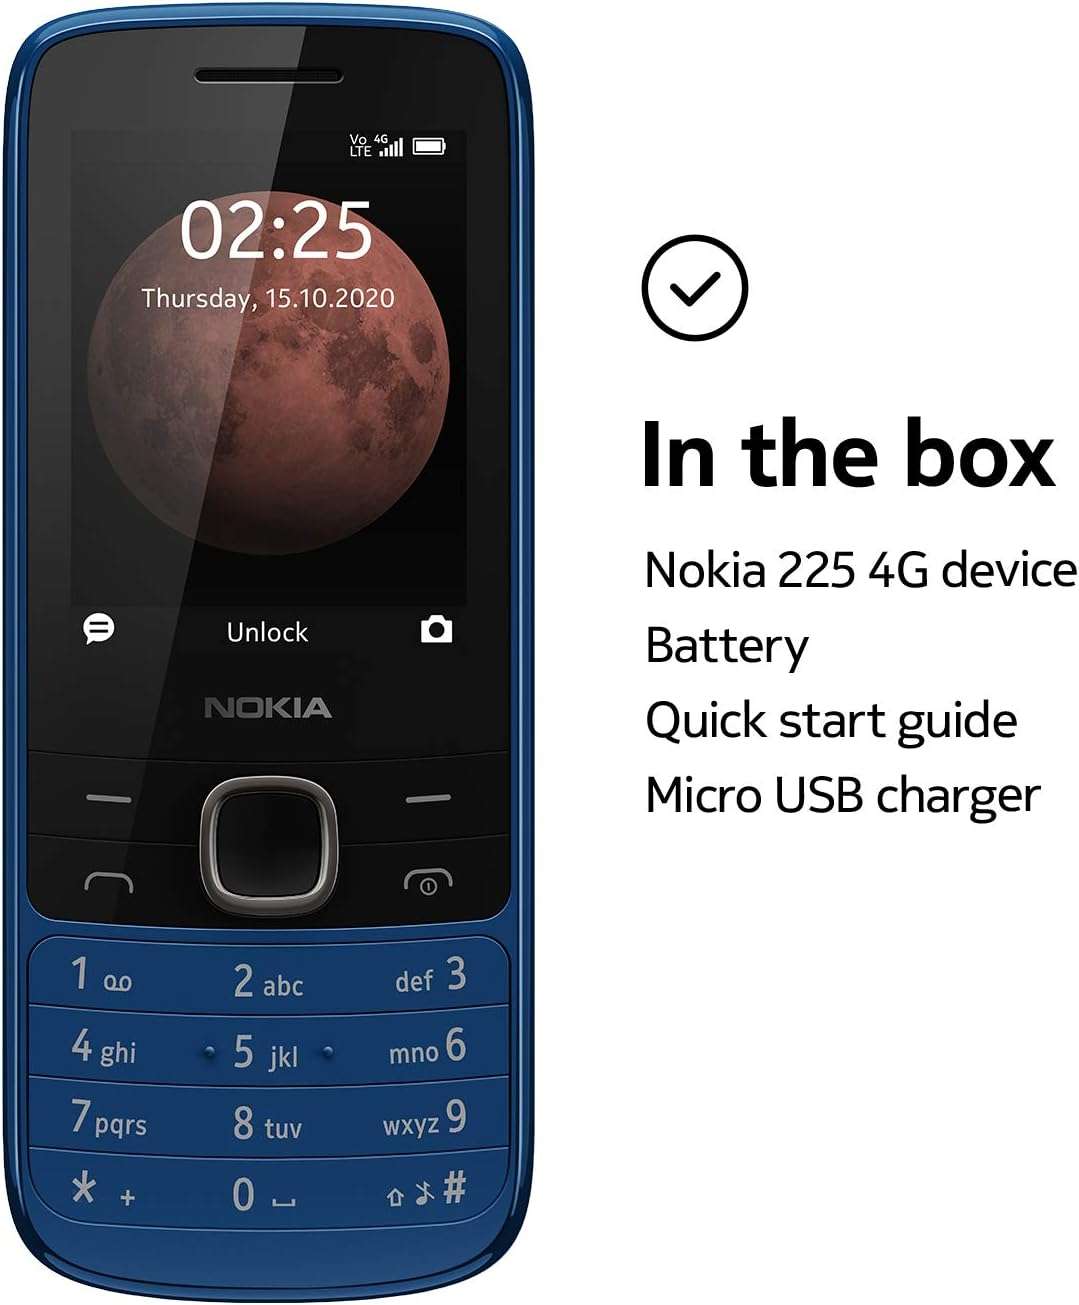 Nokia Téléphone Portable 225 4G 2020 16QENL01A02 Bleu